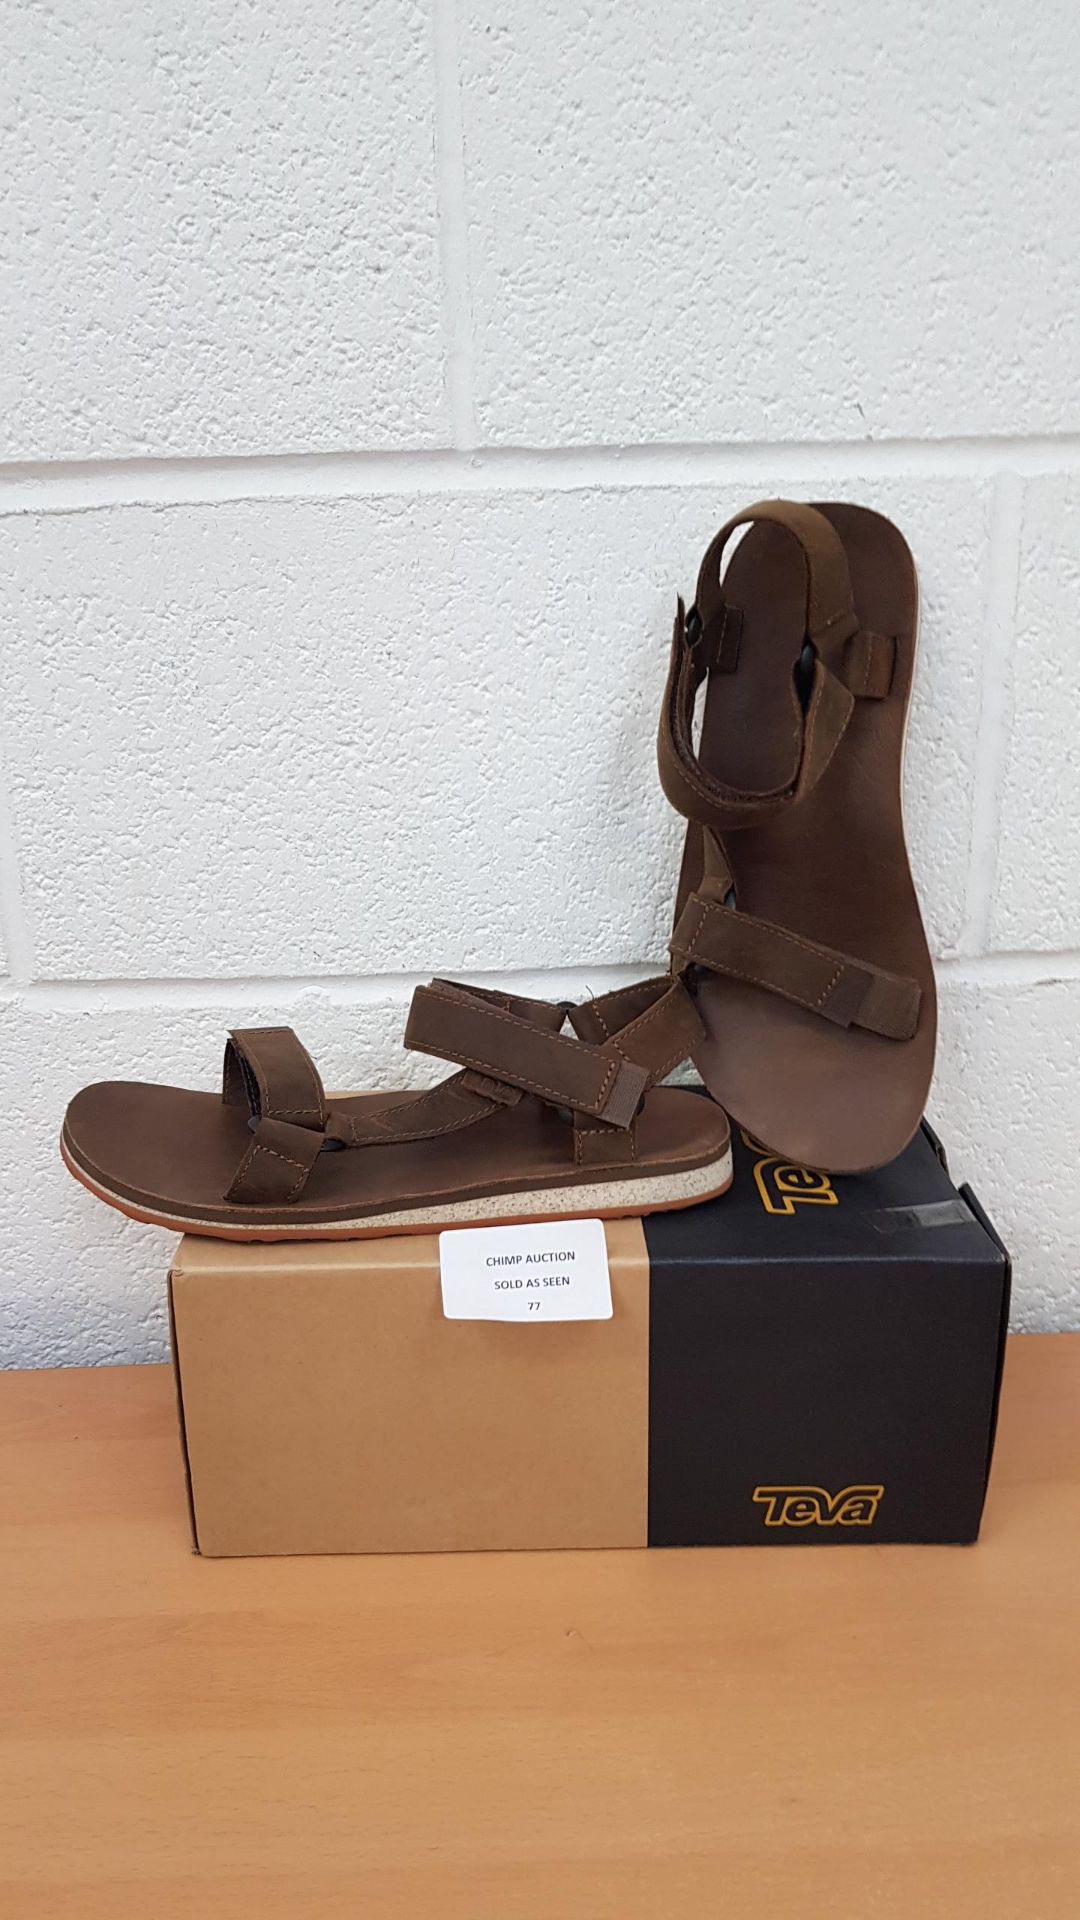 Teva mens Premium leather sandals UK 8 RRP £89.99